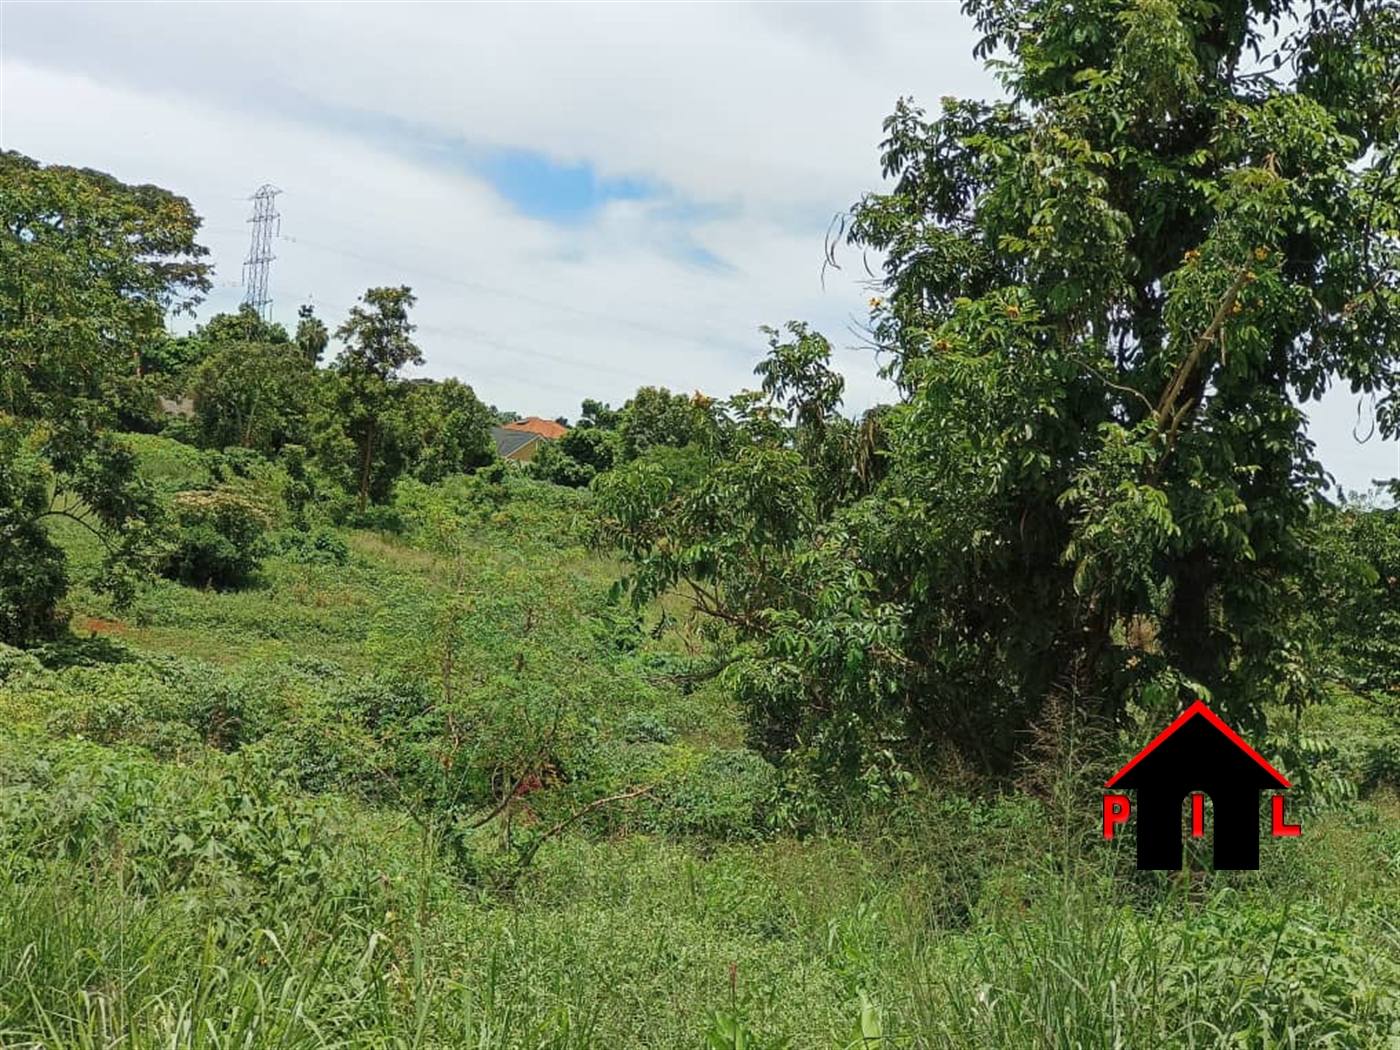 Commercial Land for sale in Rwempogo Kiruhura